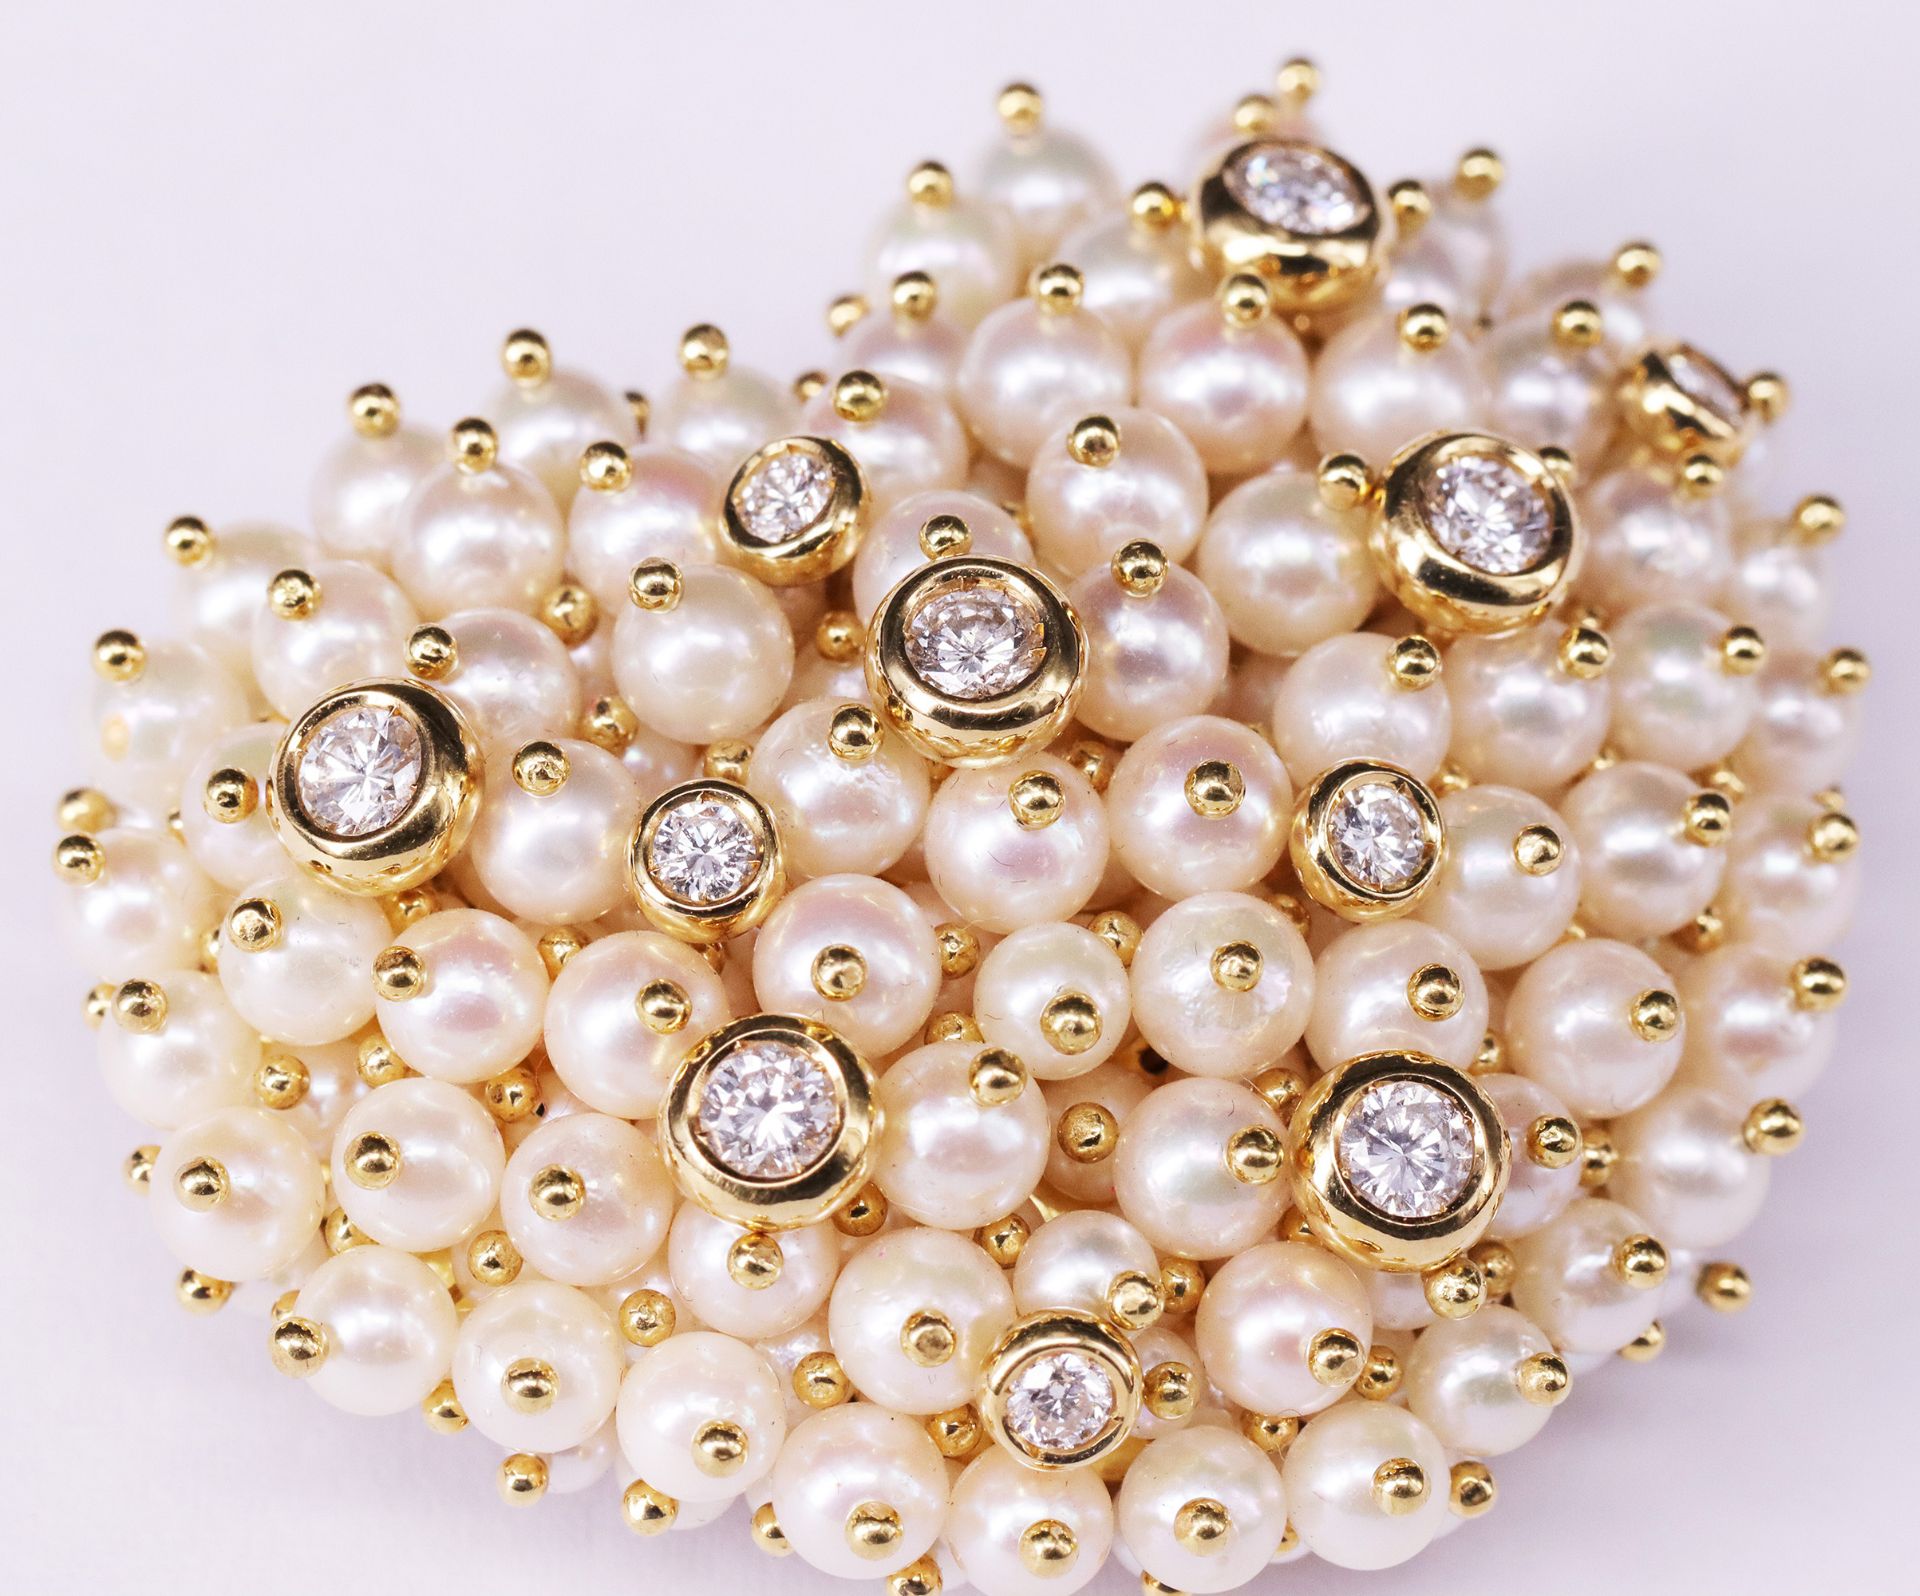 Herz als Brosche mit Zuchtperlen und Diamanten / heart shaped brooch set with pearls and diamonds.